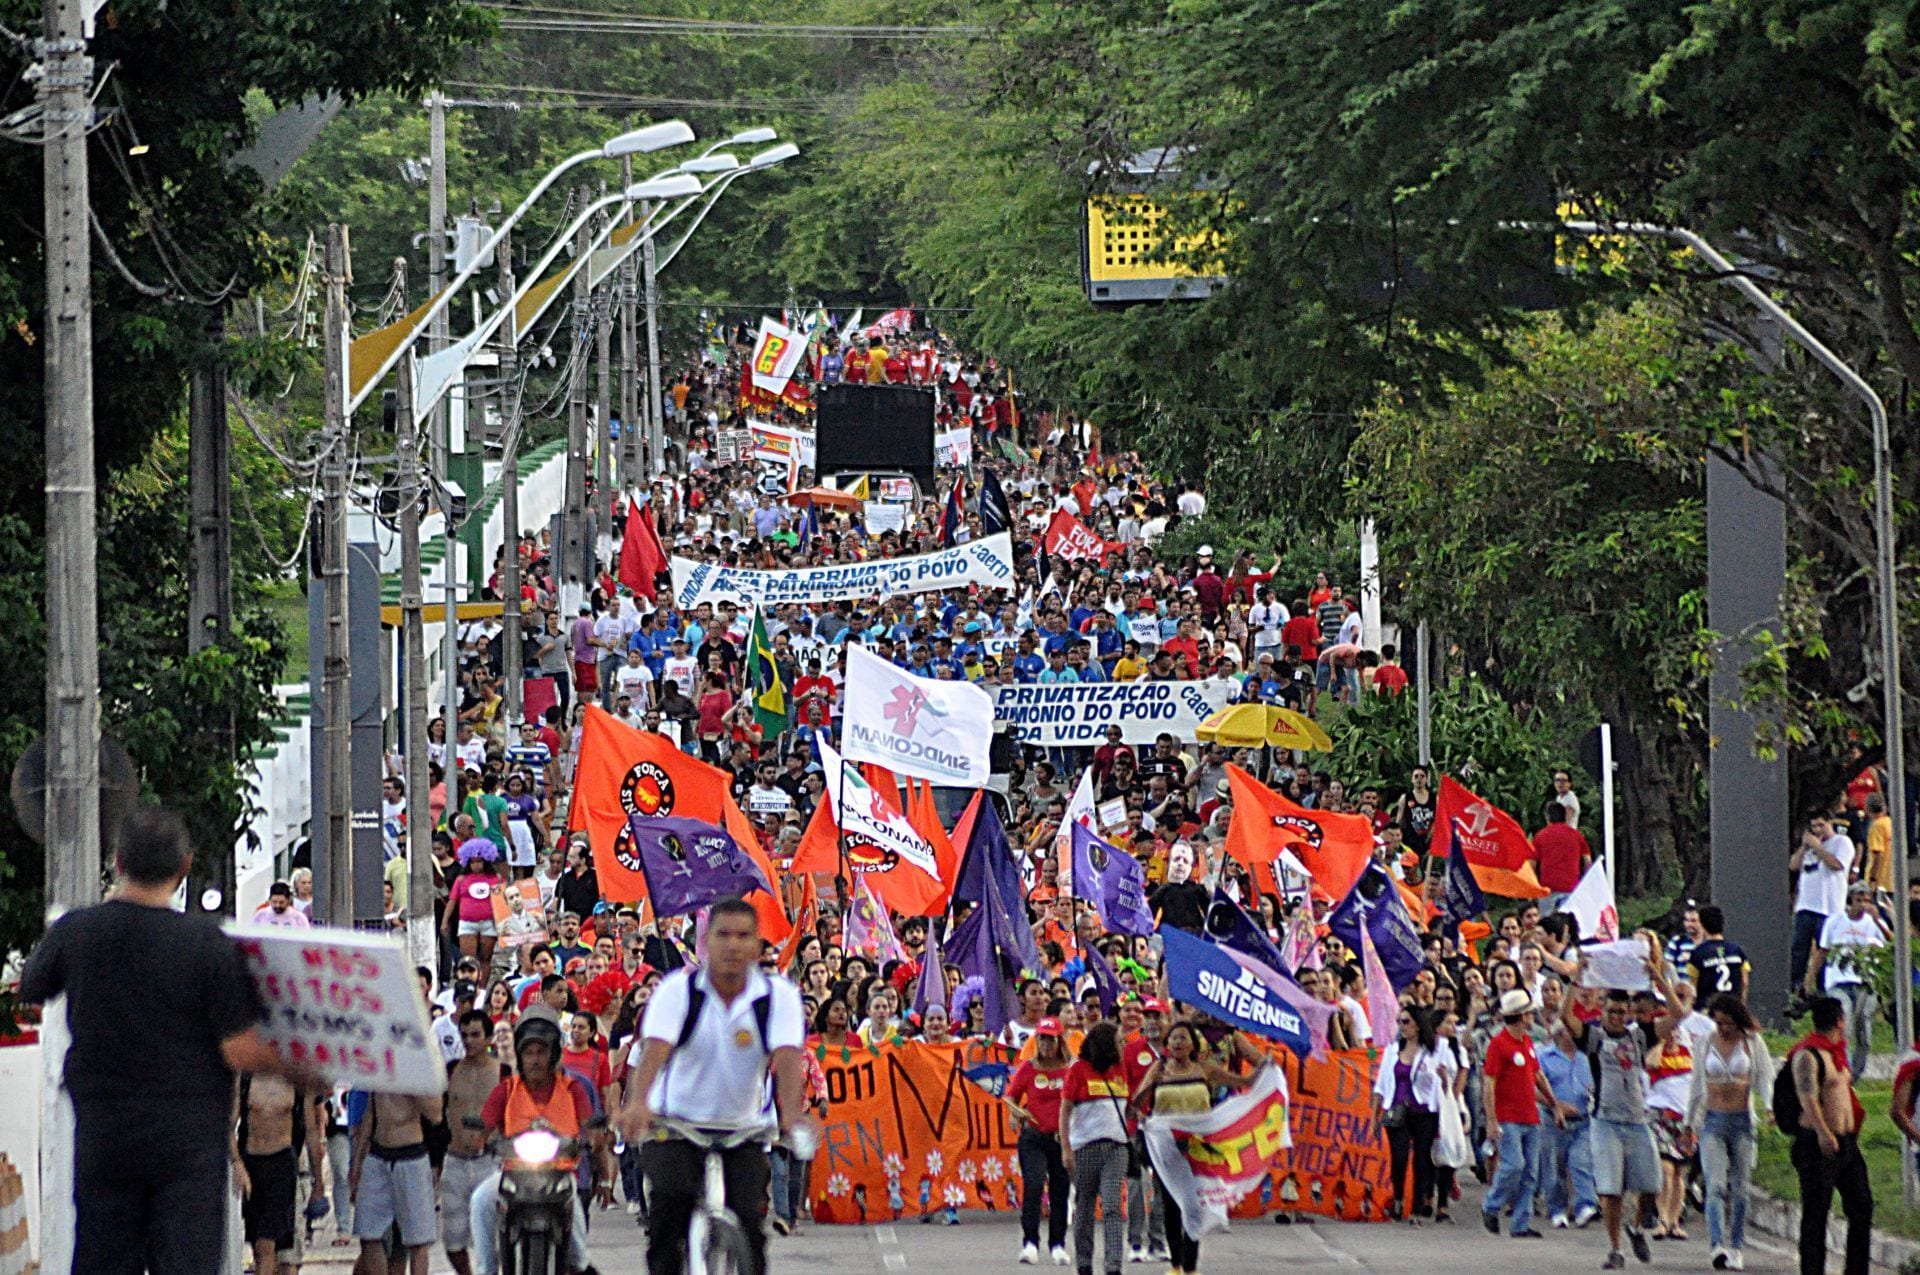 MP 873 “caduca” e sindicatos vencem nova batalha contra Bolsonaro